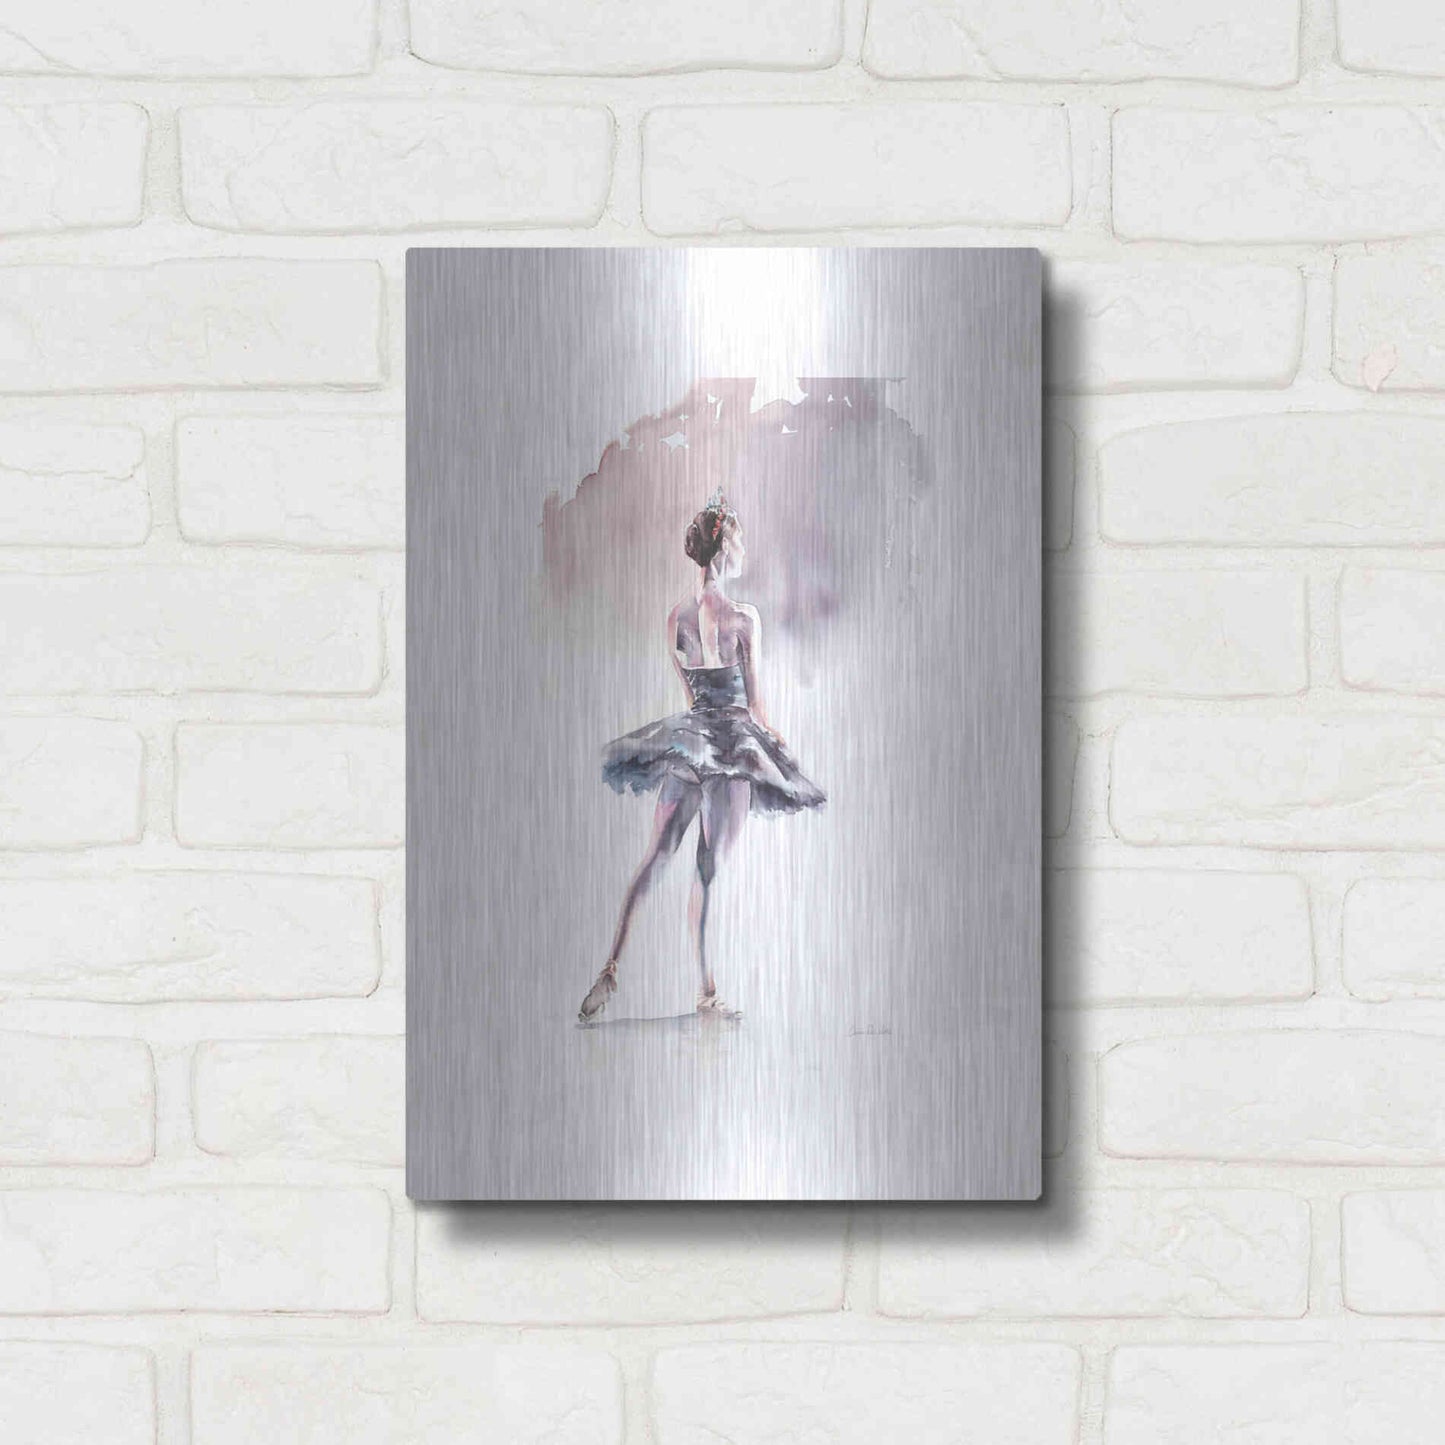 Luxe Metal Art 'Ballet I White Border' by Alan Majchrowicz, Metal Wall Art,12x16